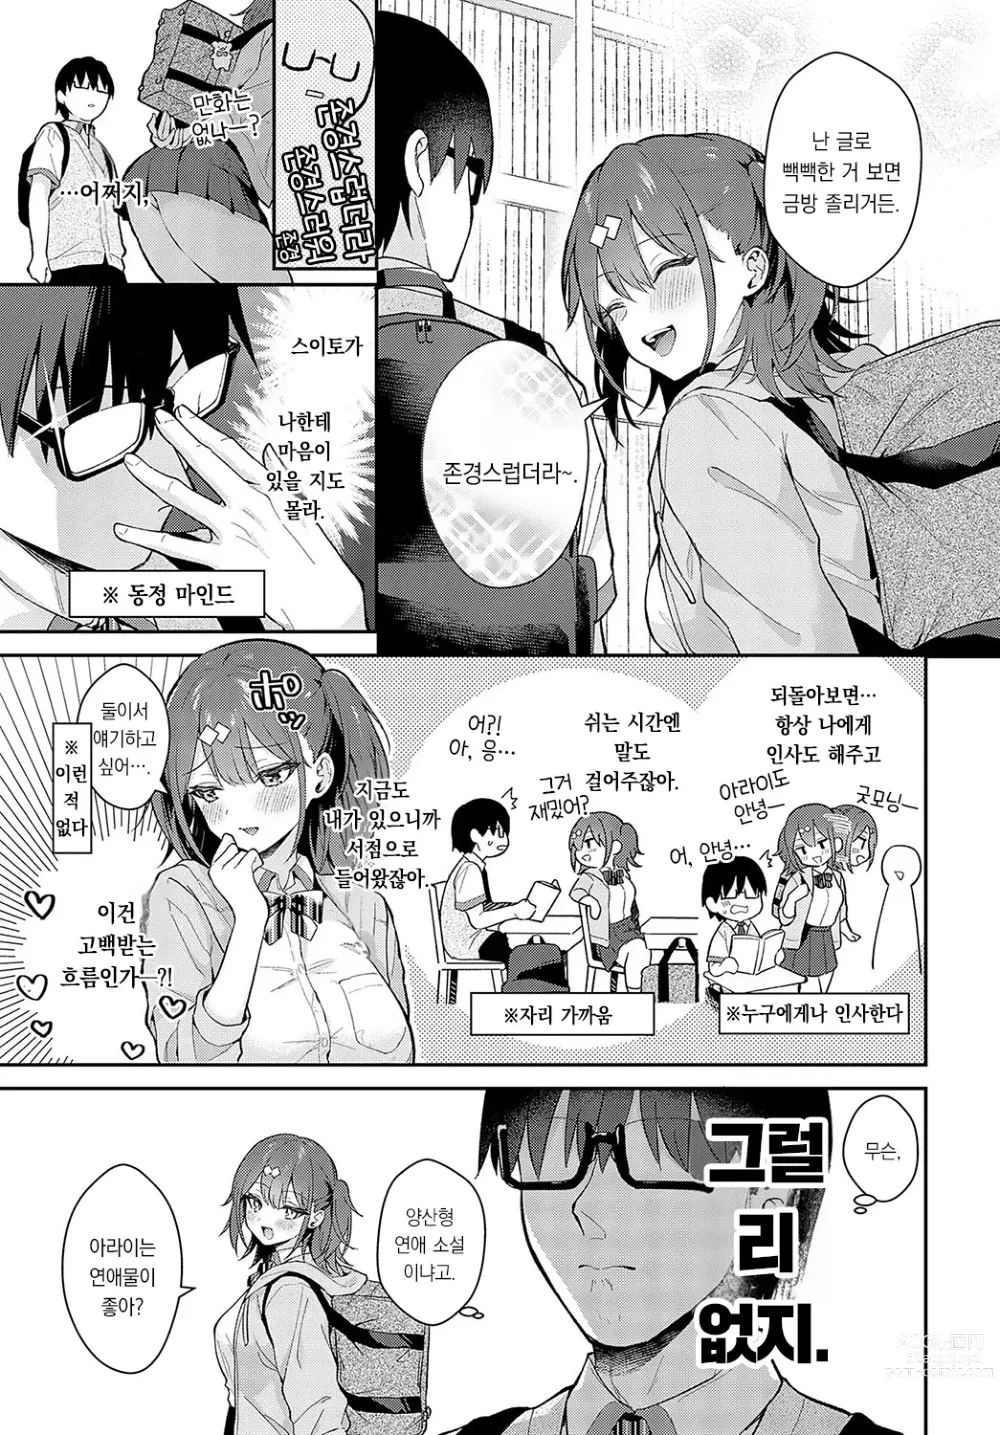 Page 4 of manga Better than fiction